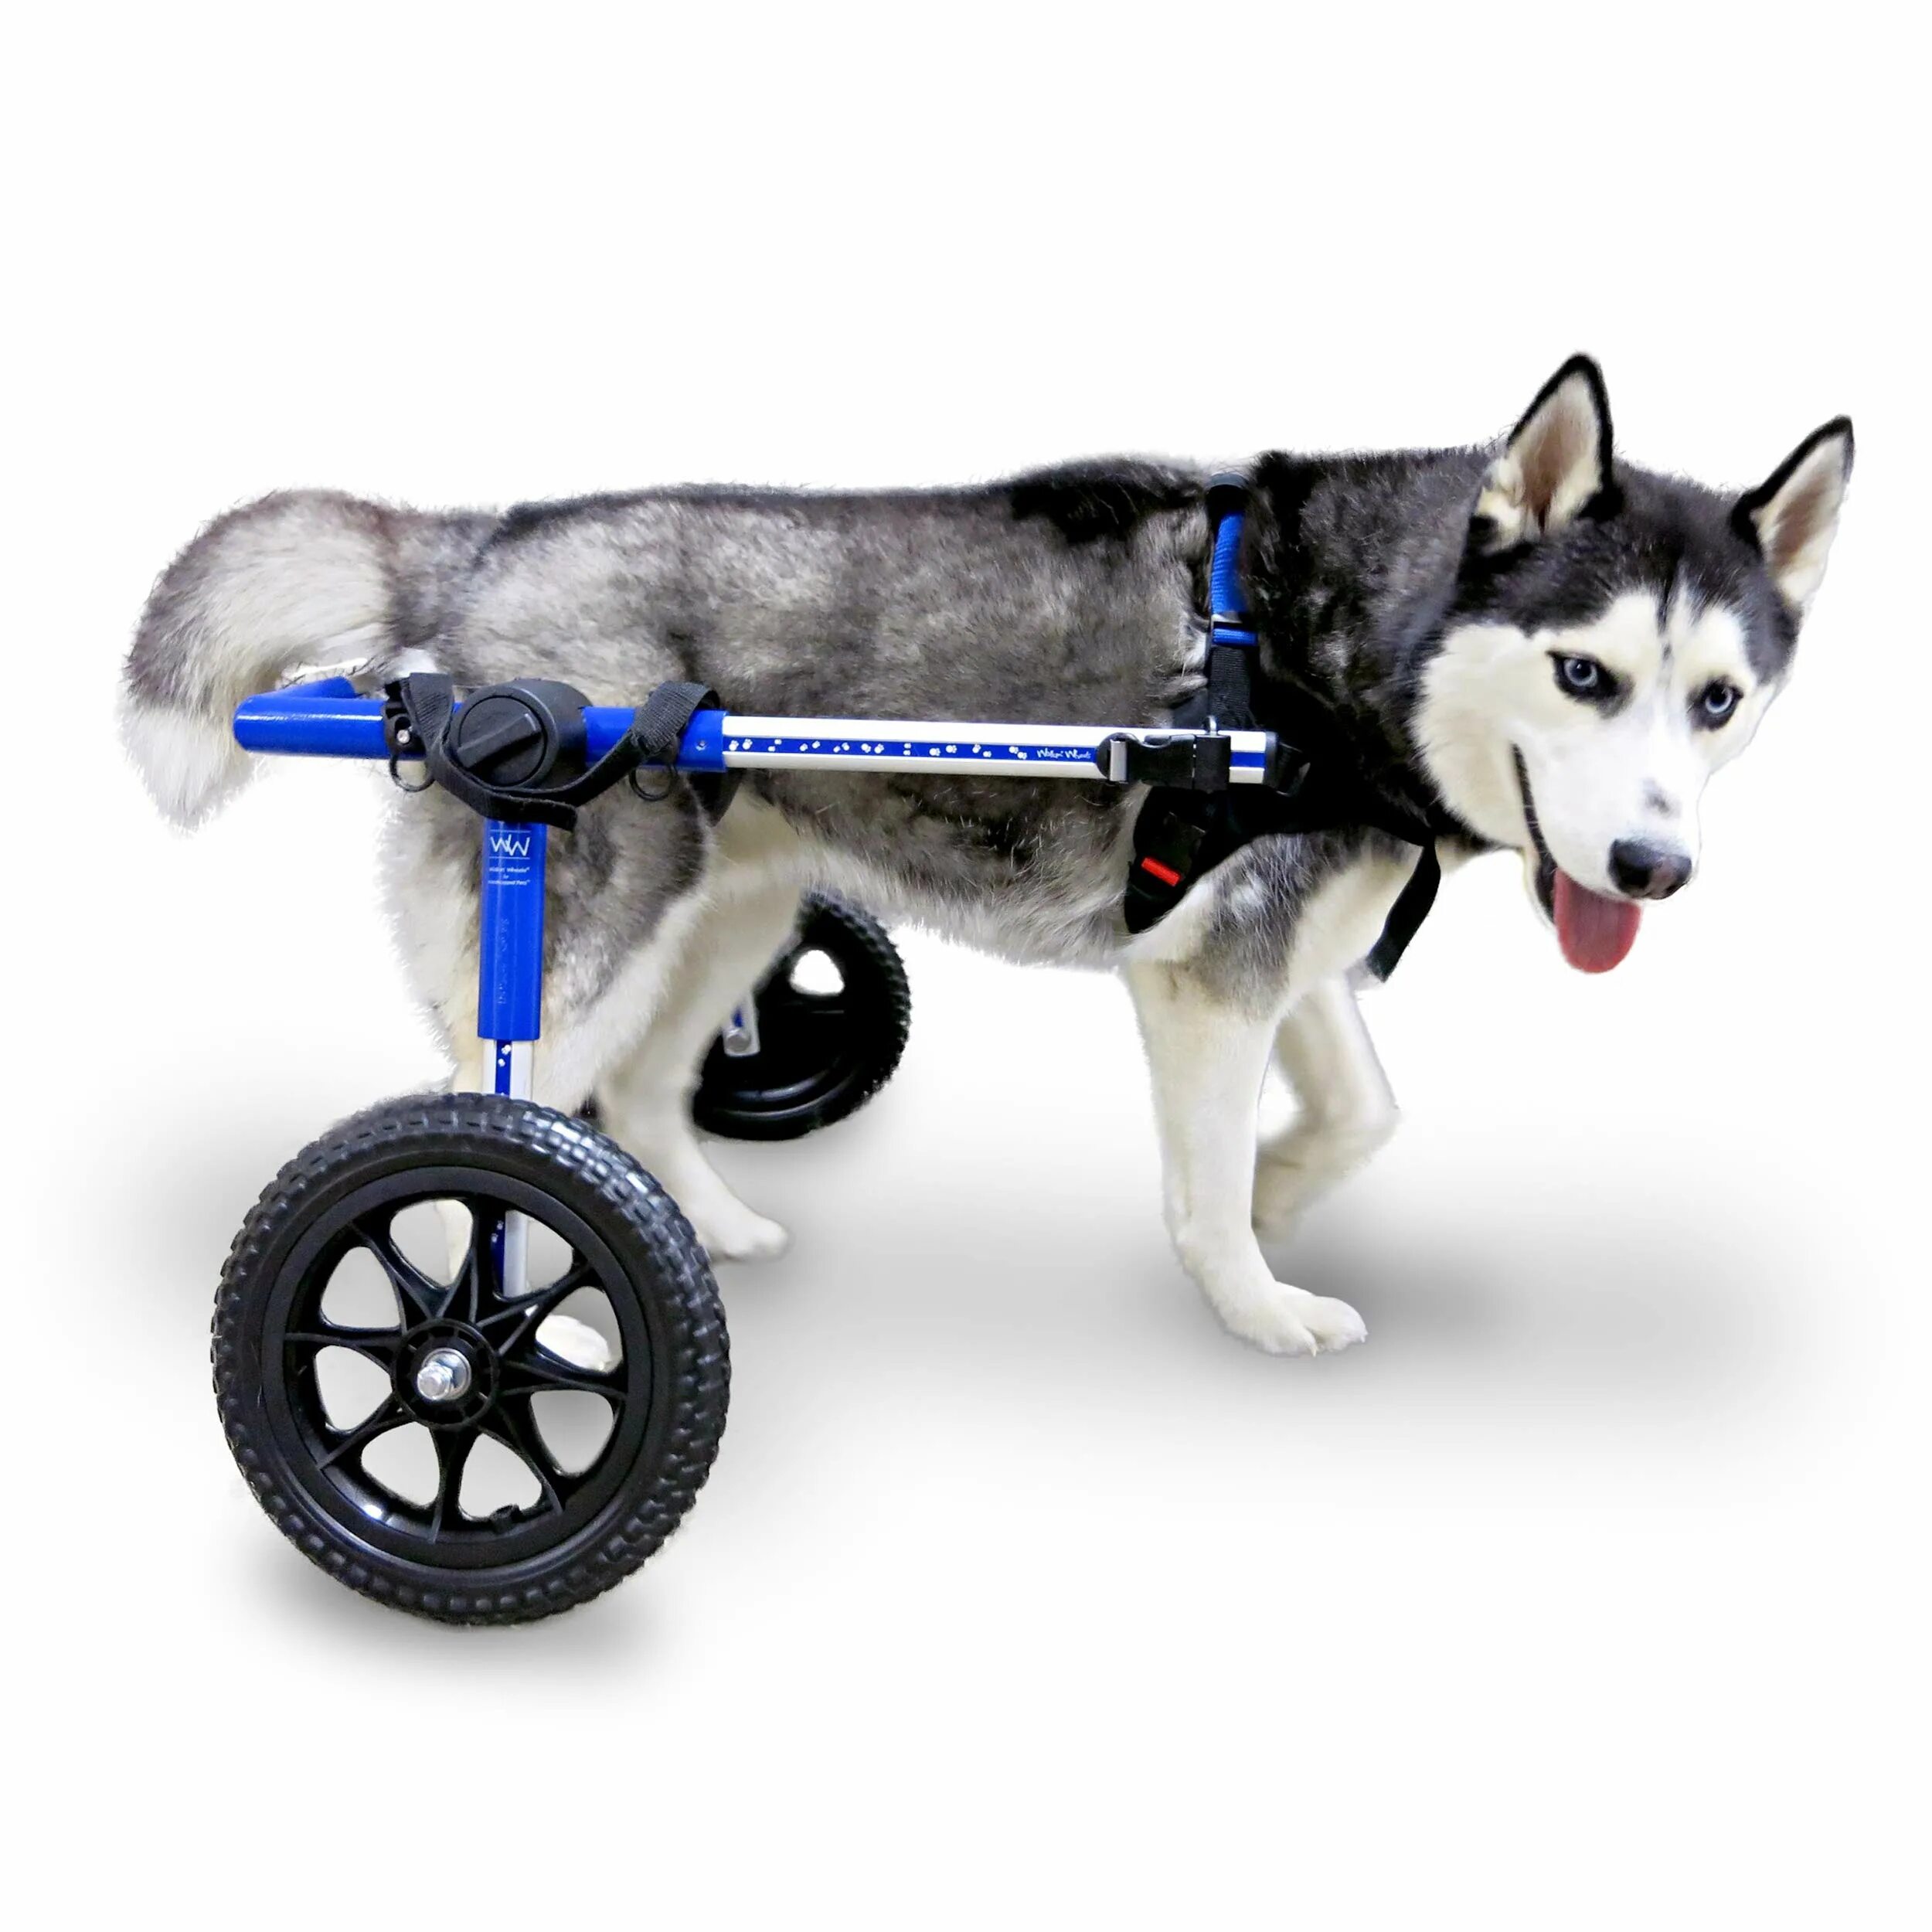 Коляска Walkin Wheels. Инвалидные коляски Dog wheelchairs. Коляска для собак инвалидов. Тележка для собаки инвалида.